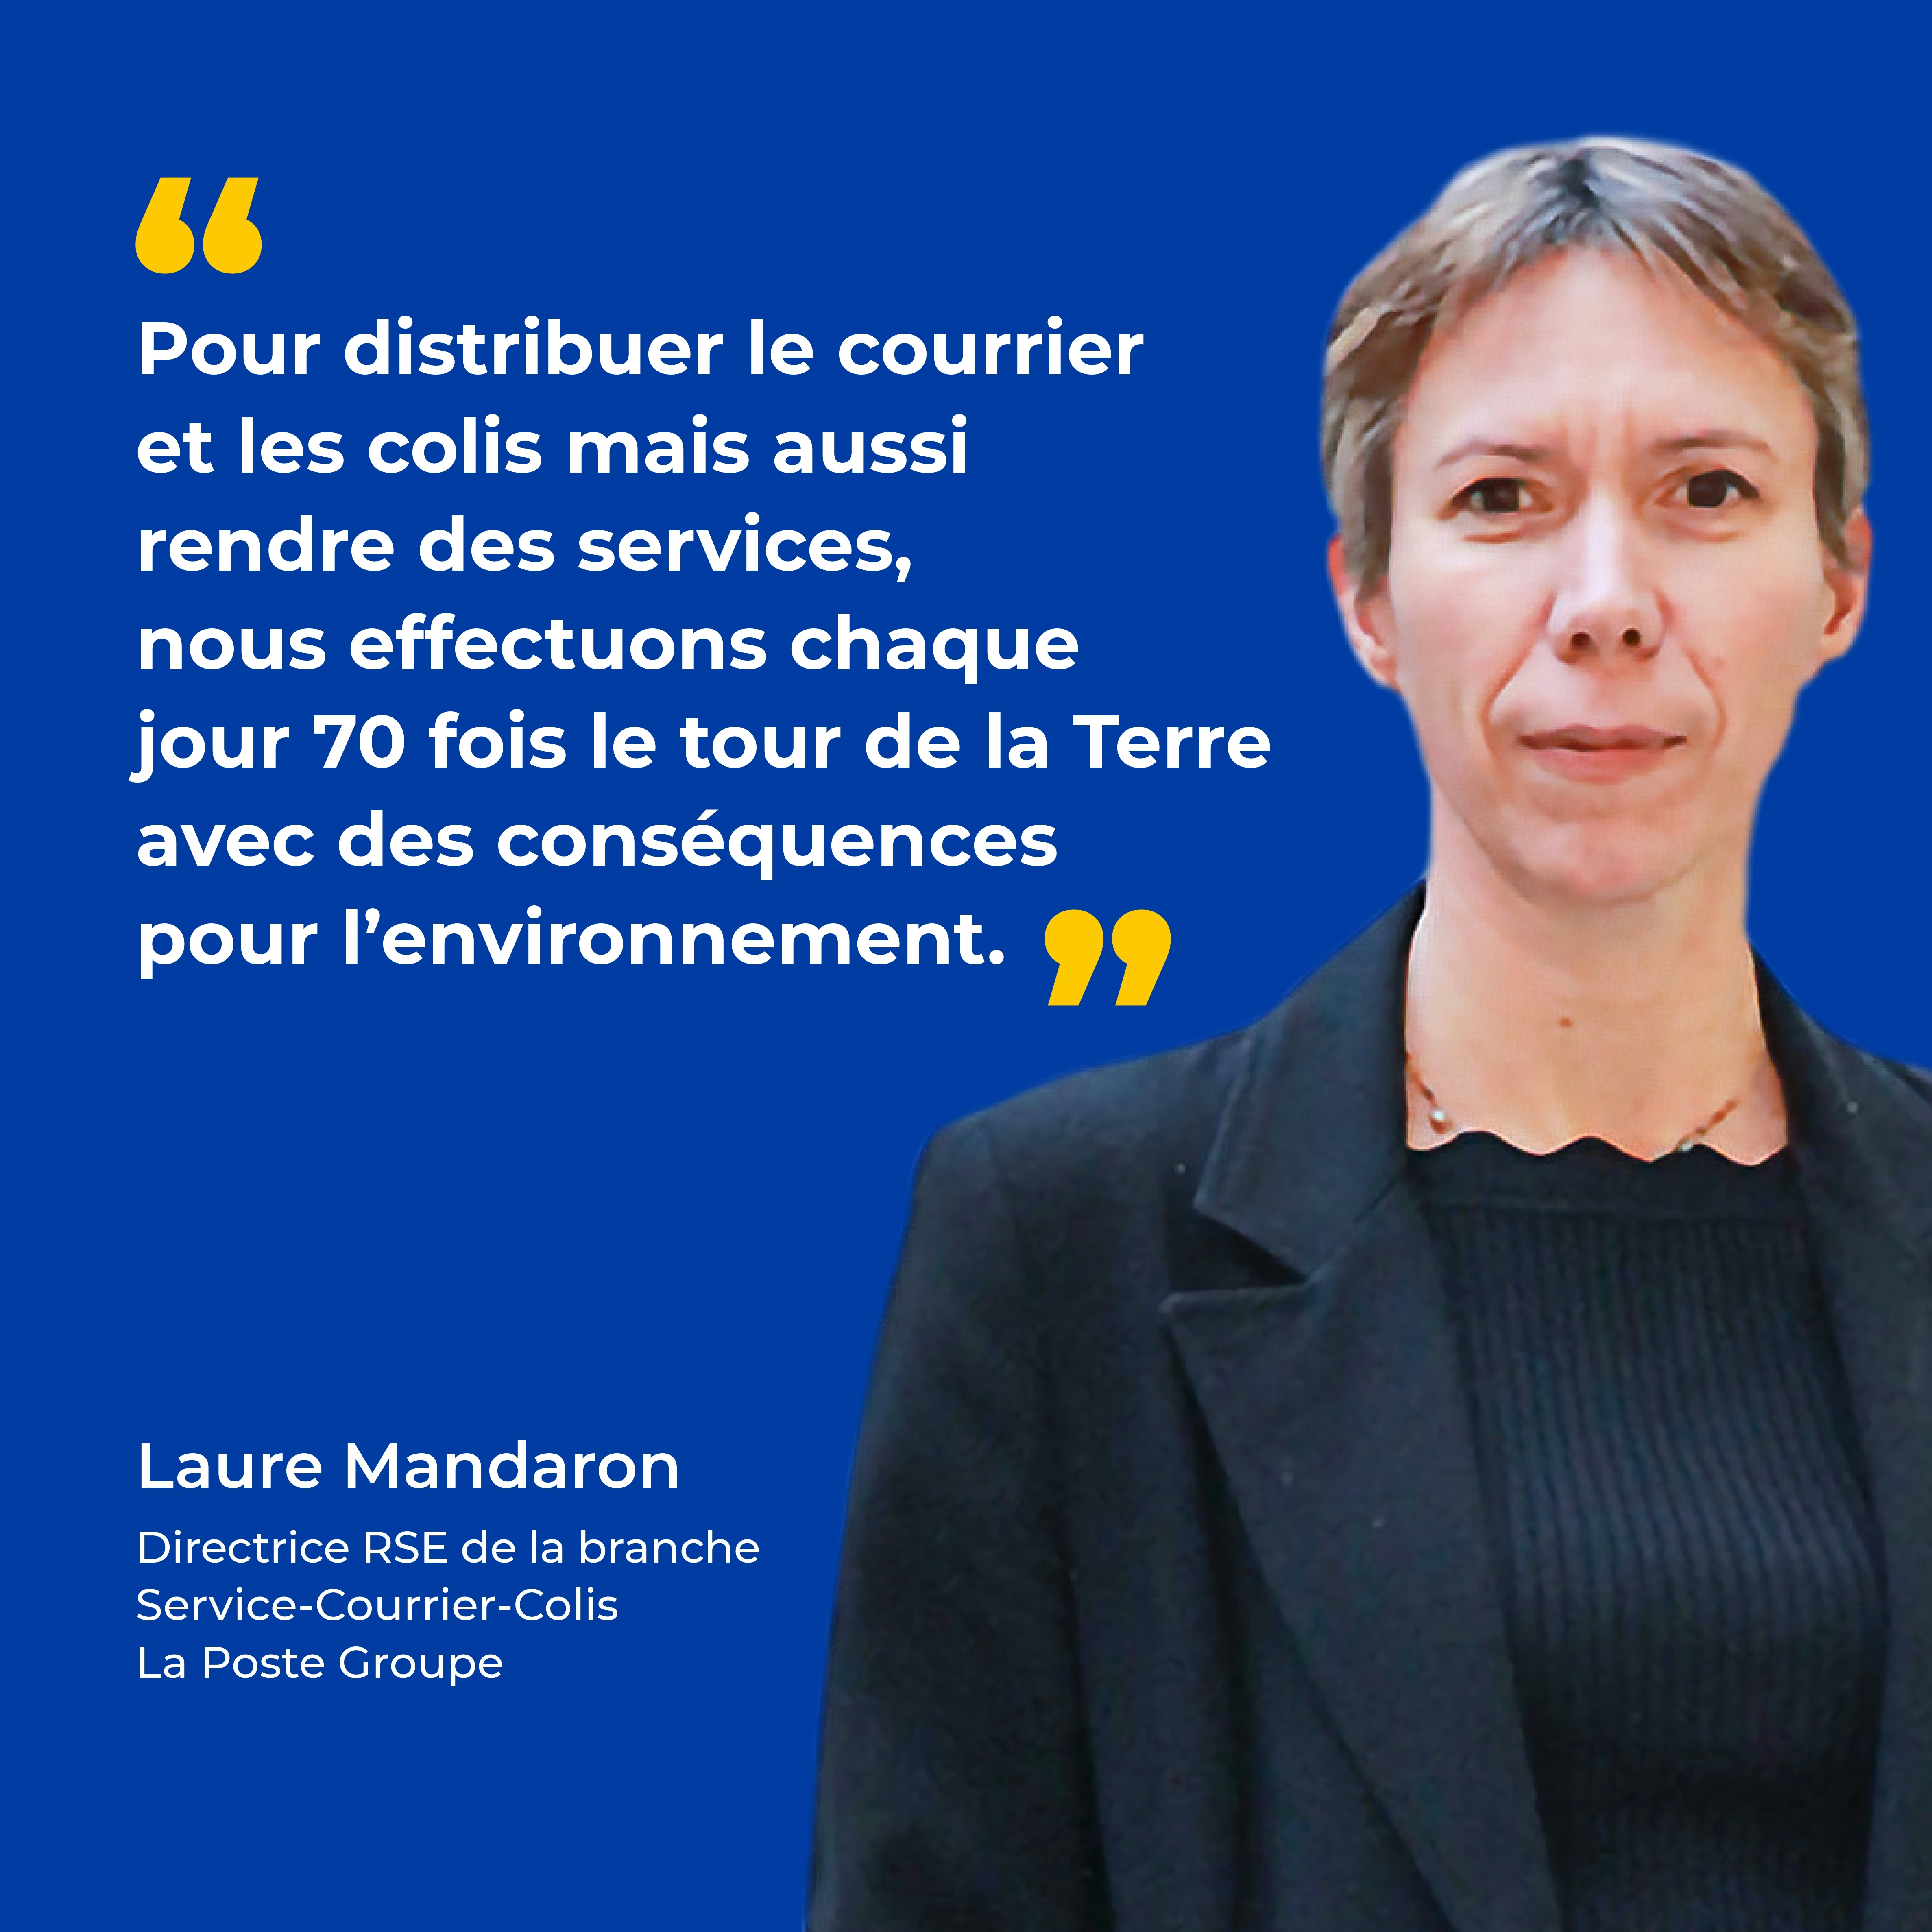 La biodiversité et la logistique - Photo de Laure Mandaron, Directrice RSE de la branche Service-Courrier-Colis de La Poste Groupe